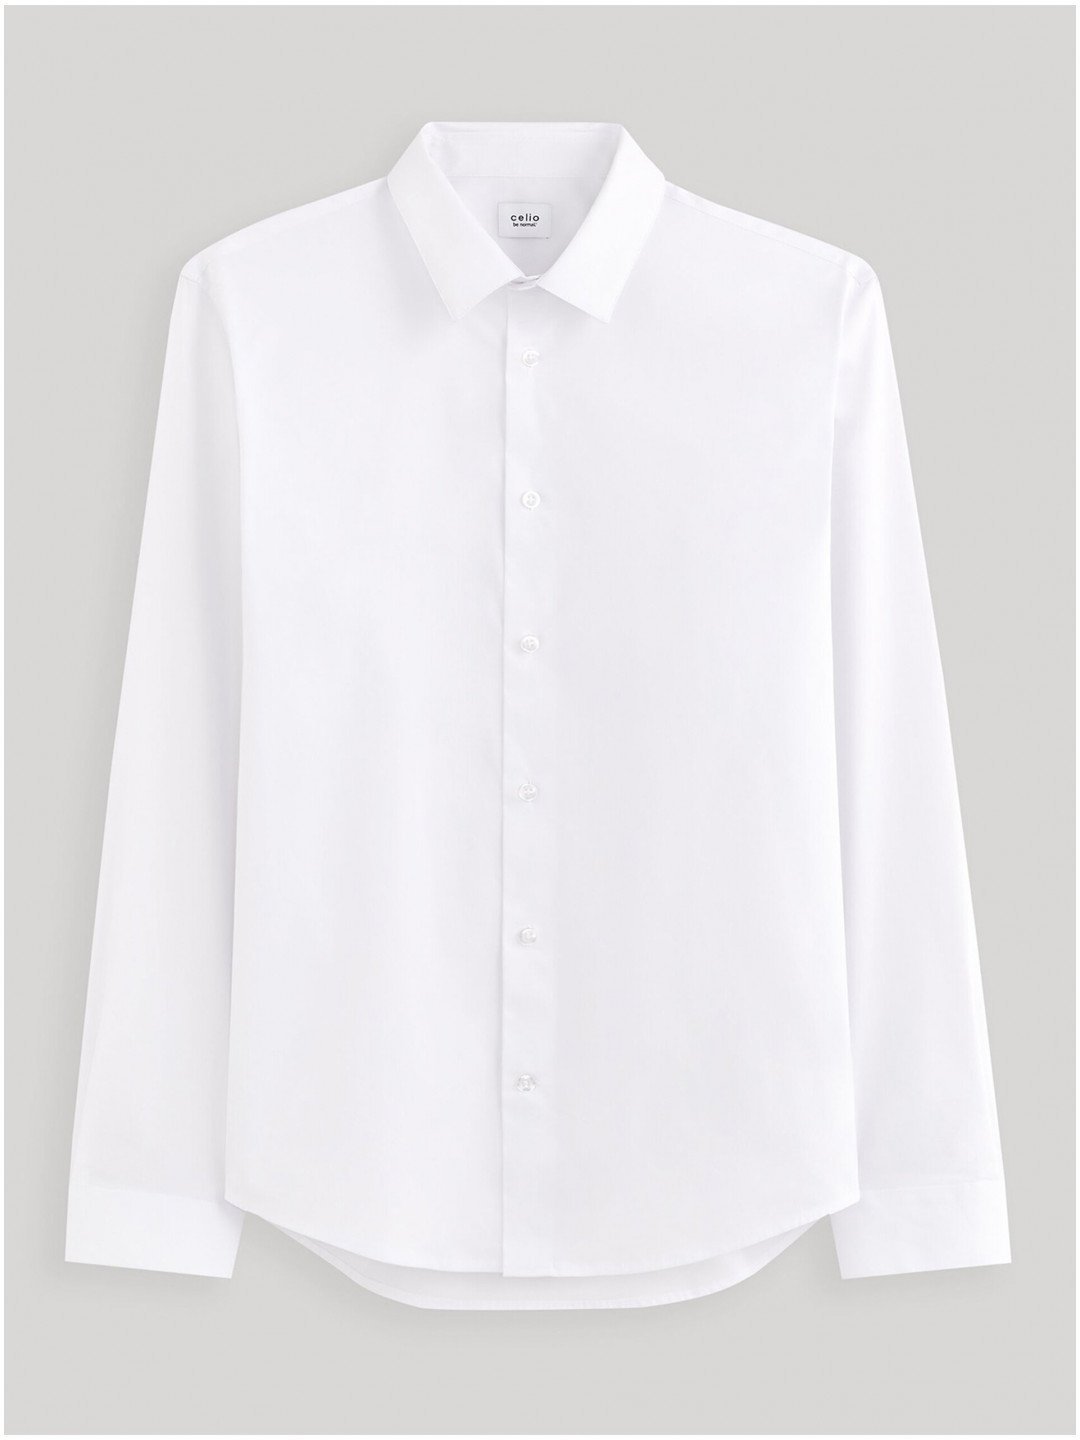 Bílá pánská košile Celio Masantalrg